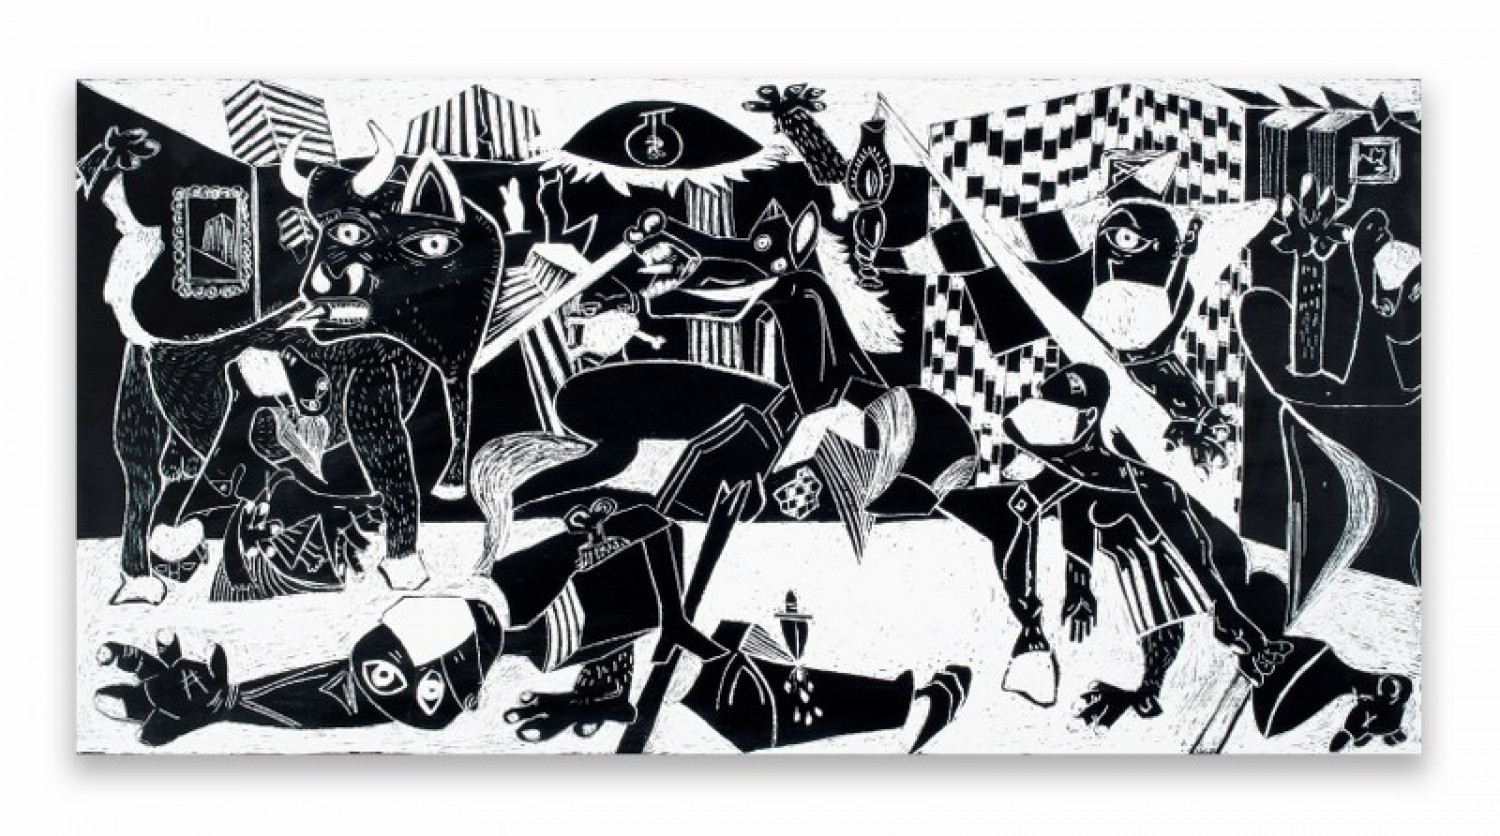 Alex Dorici, ‘Guernica’, 2020, grattage on painted ceramic tile 